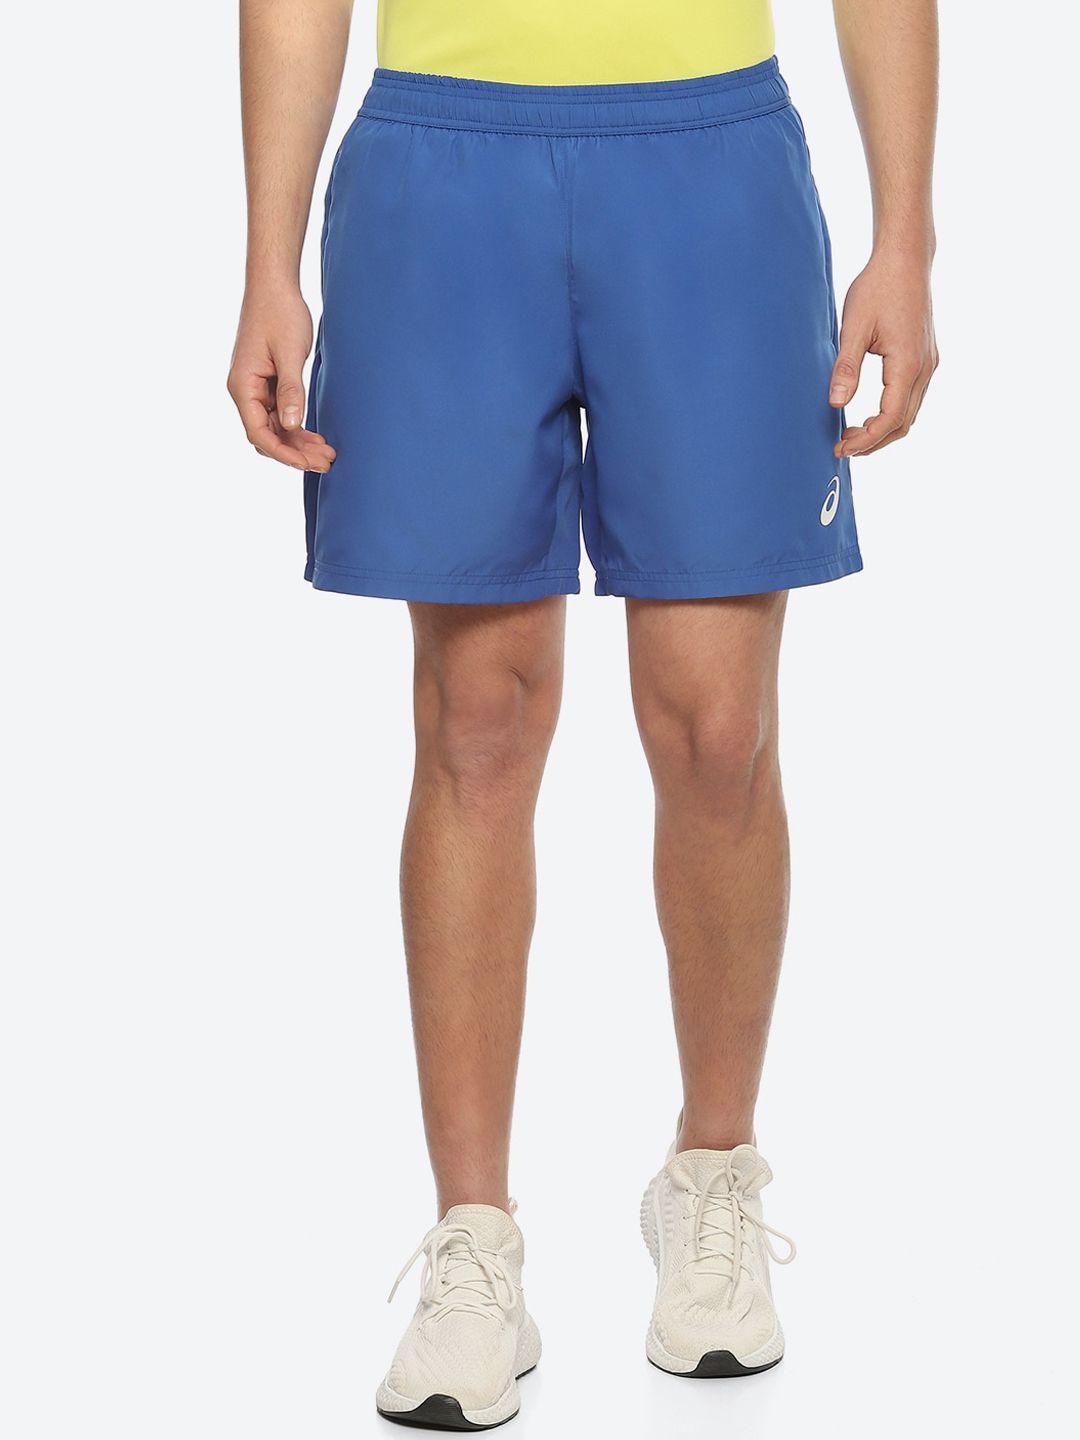 asics-men-mid-rise-slim-fit-shorts